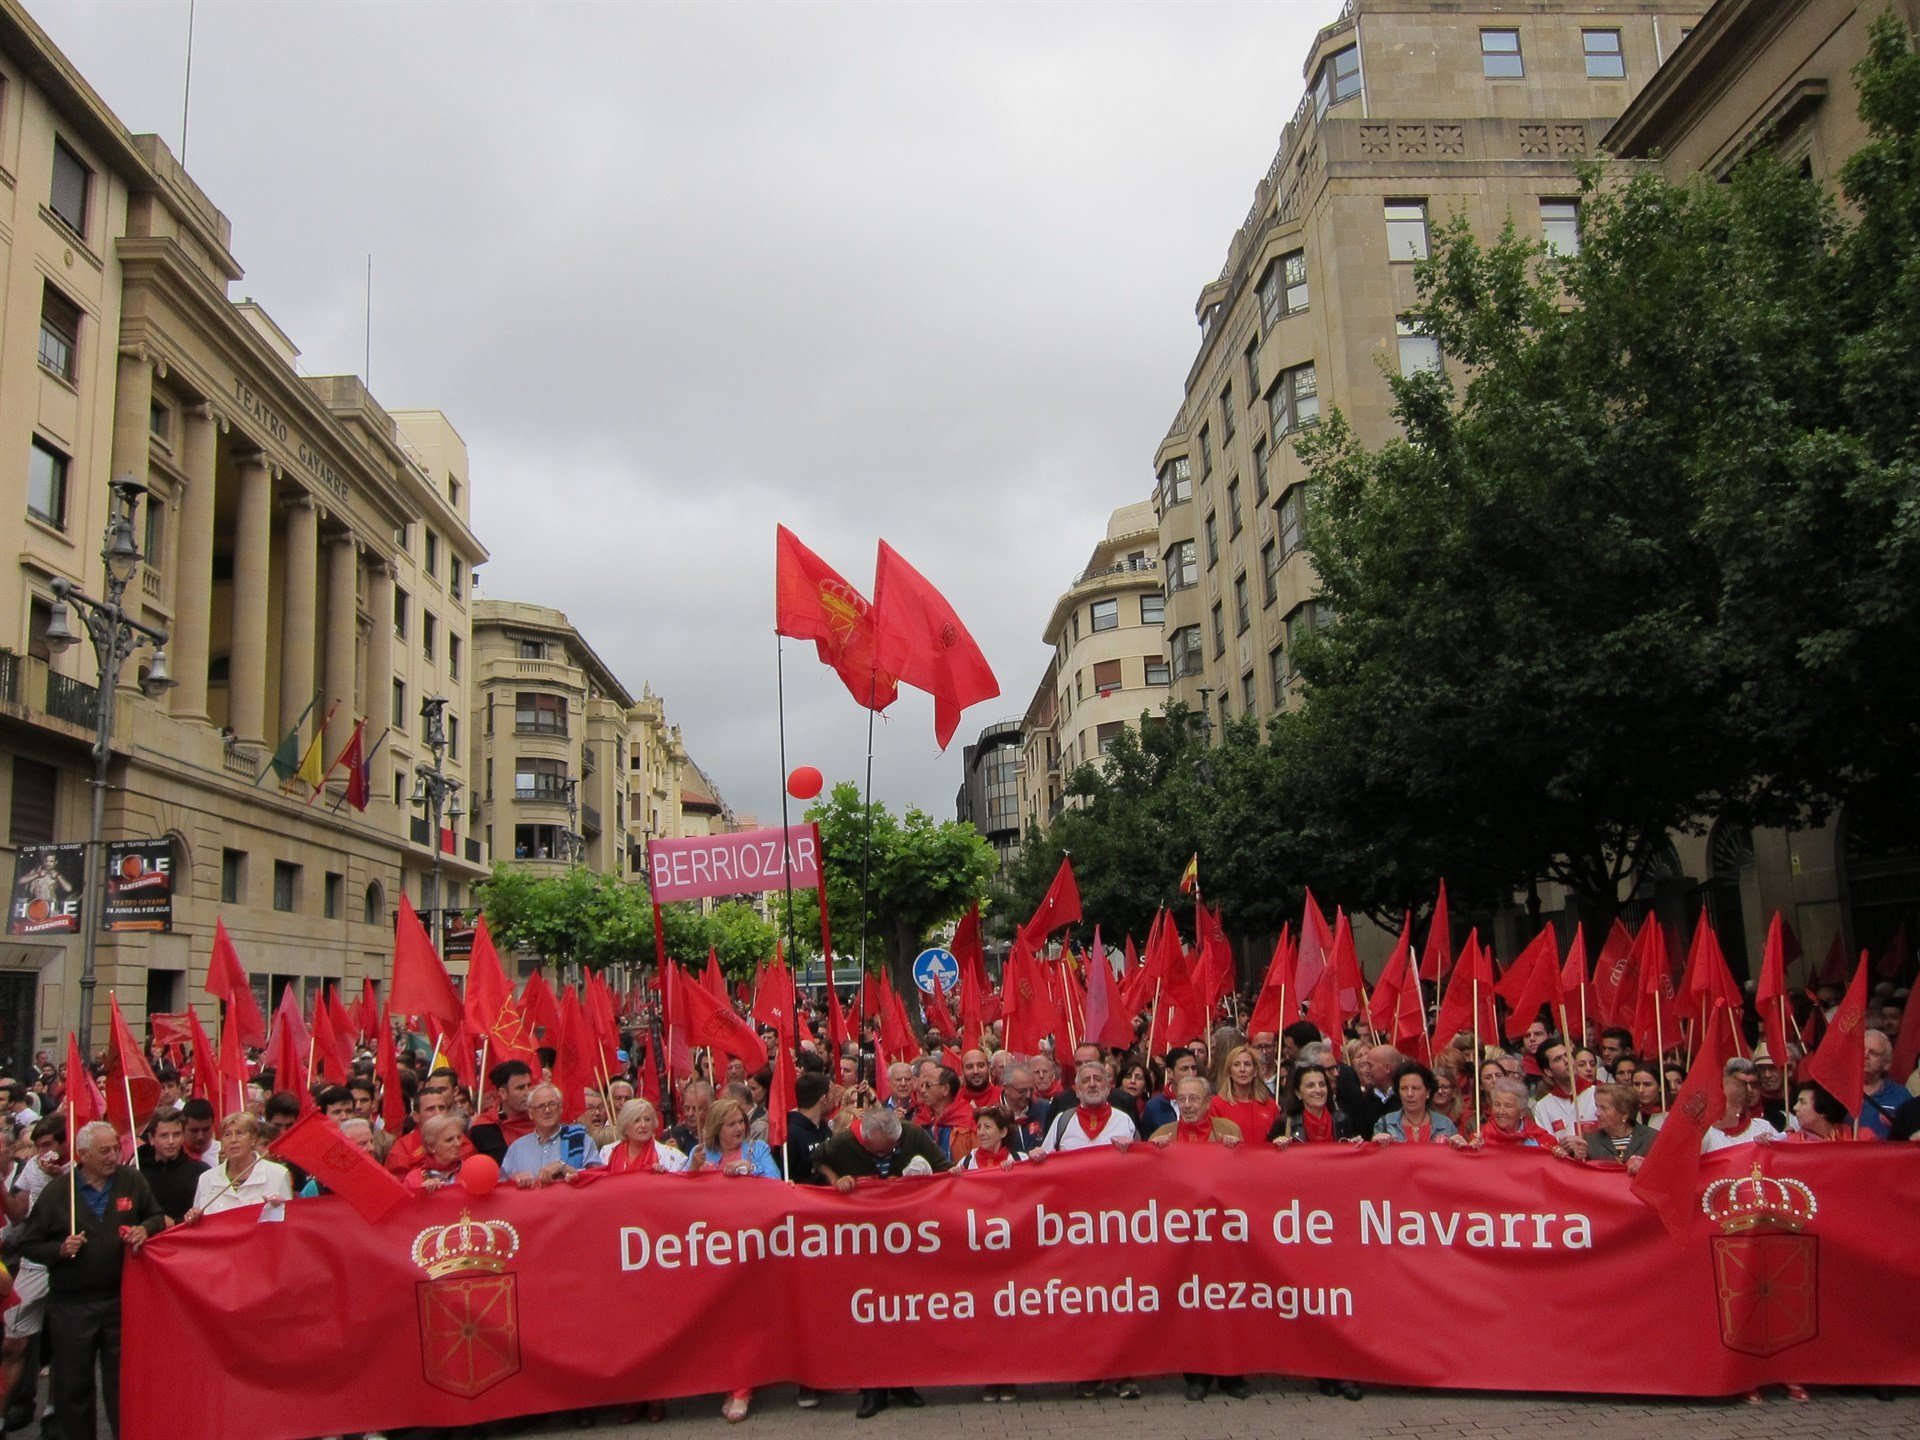 Manifestación en Pamplona en defensa de la bandera de Navarra y contra la ikurriña